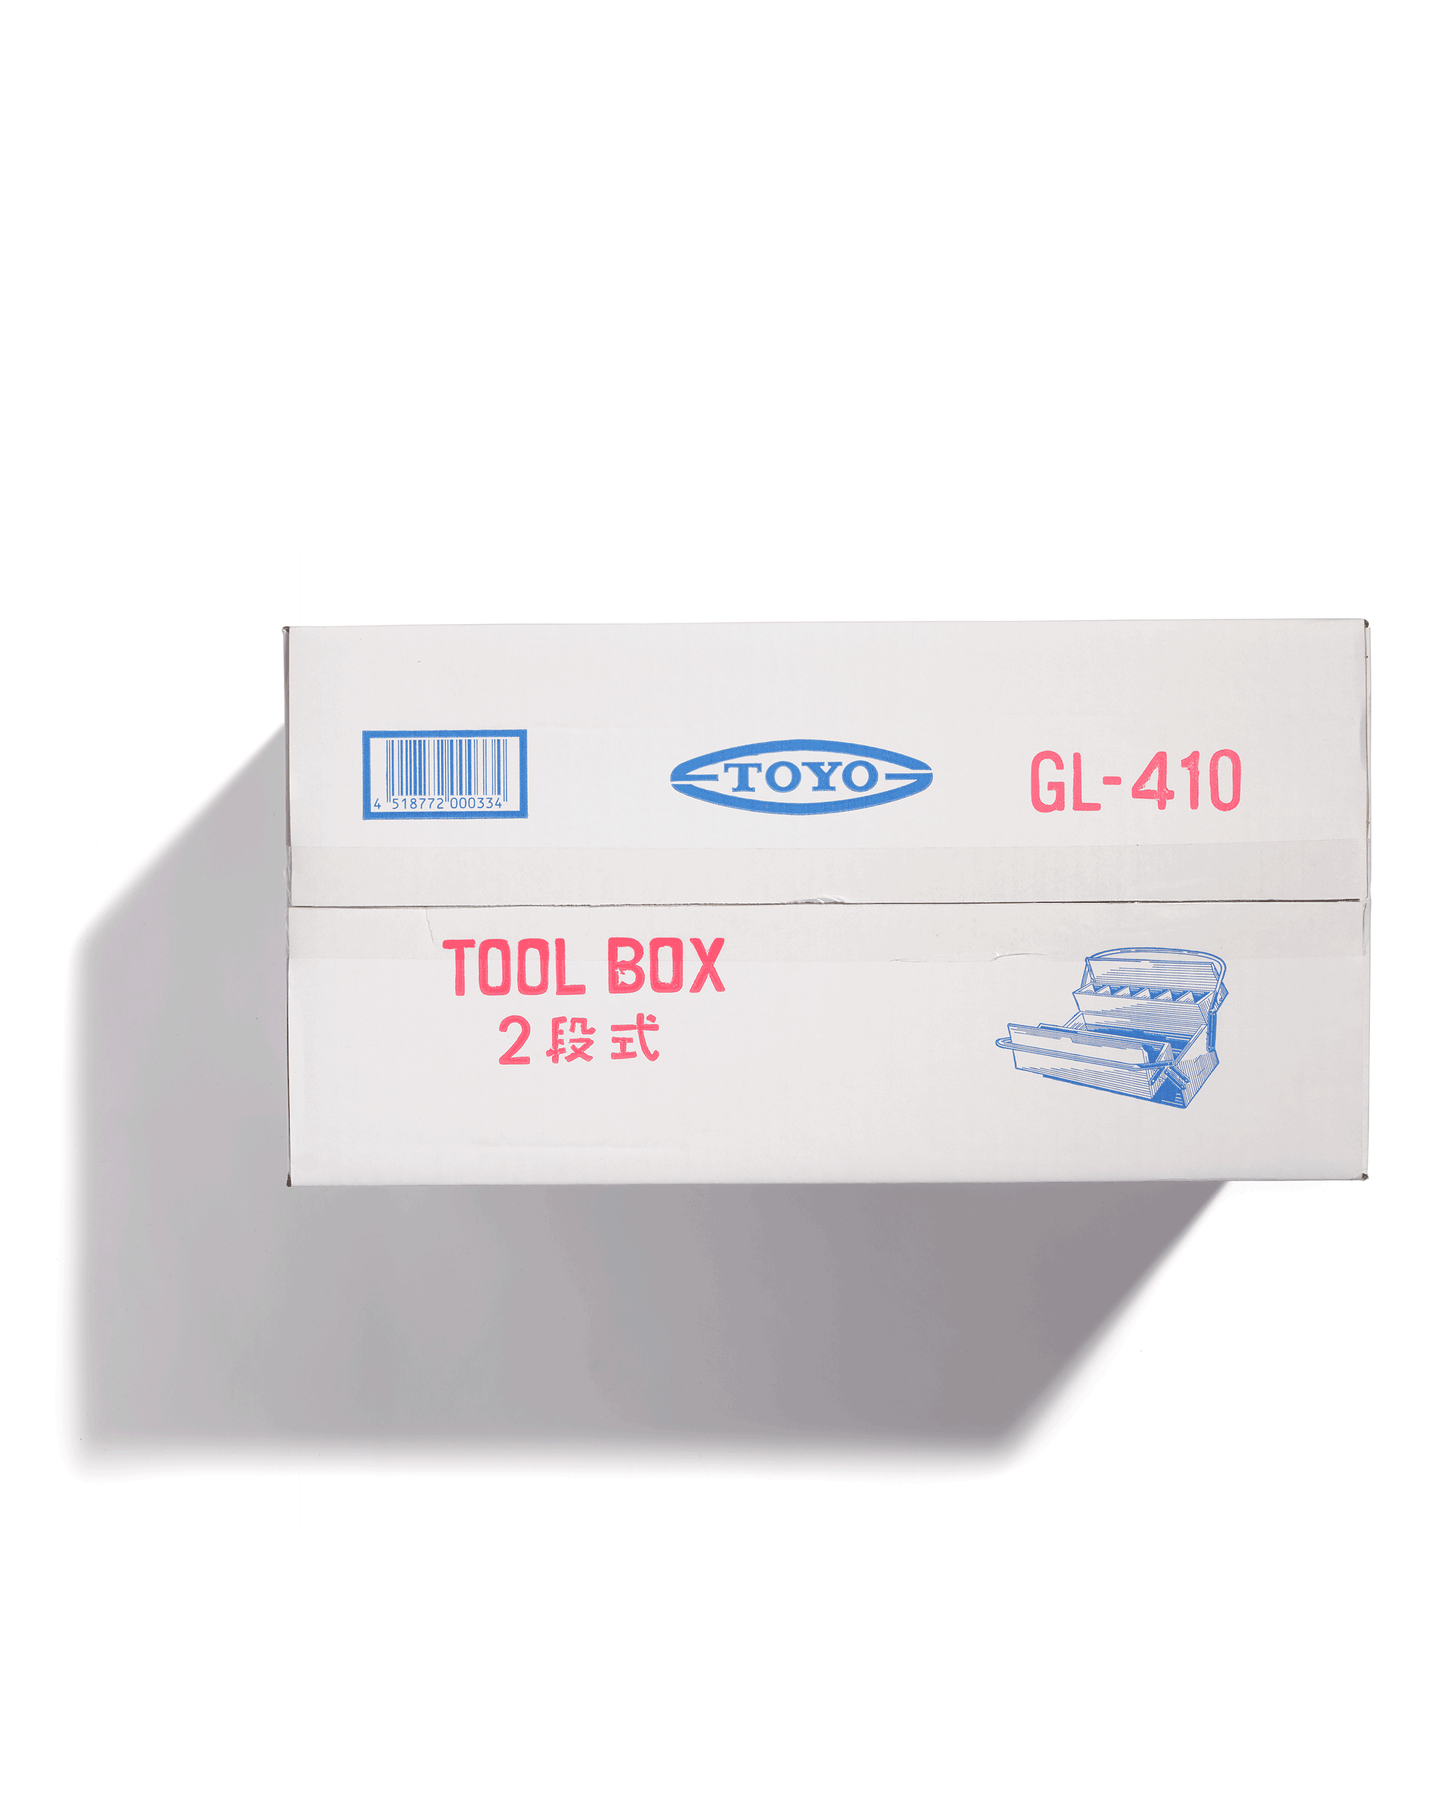 Grande boîte à outils GL-410 - Toyo